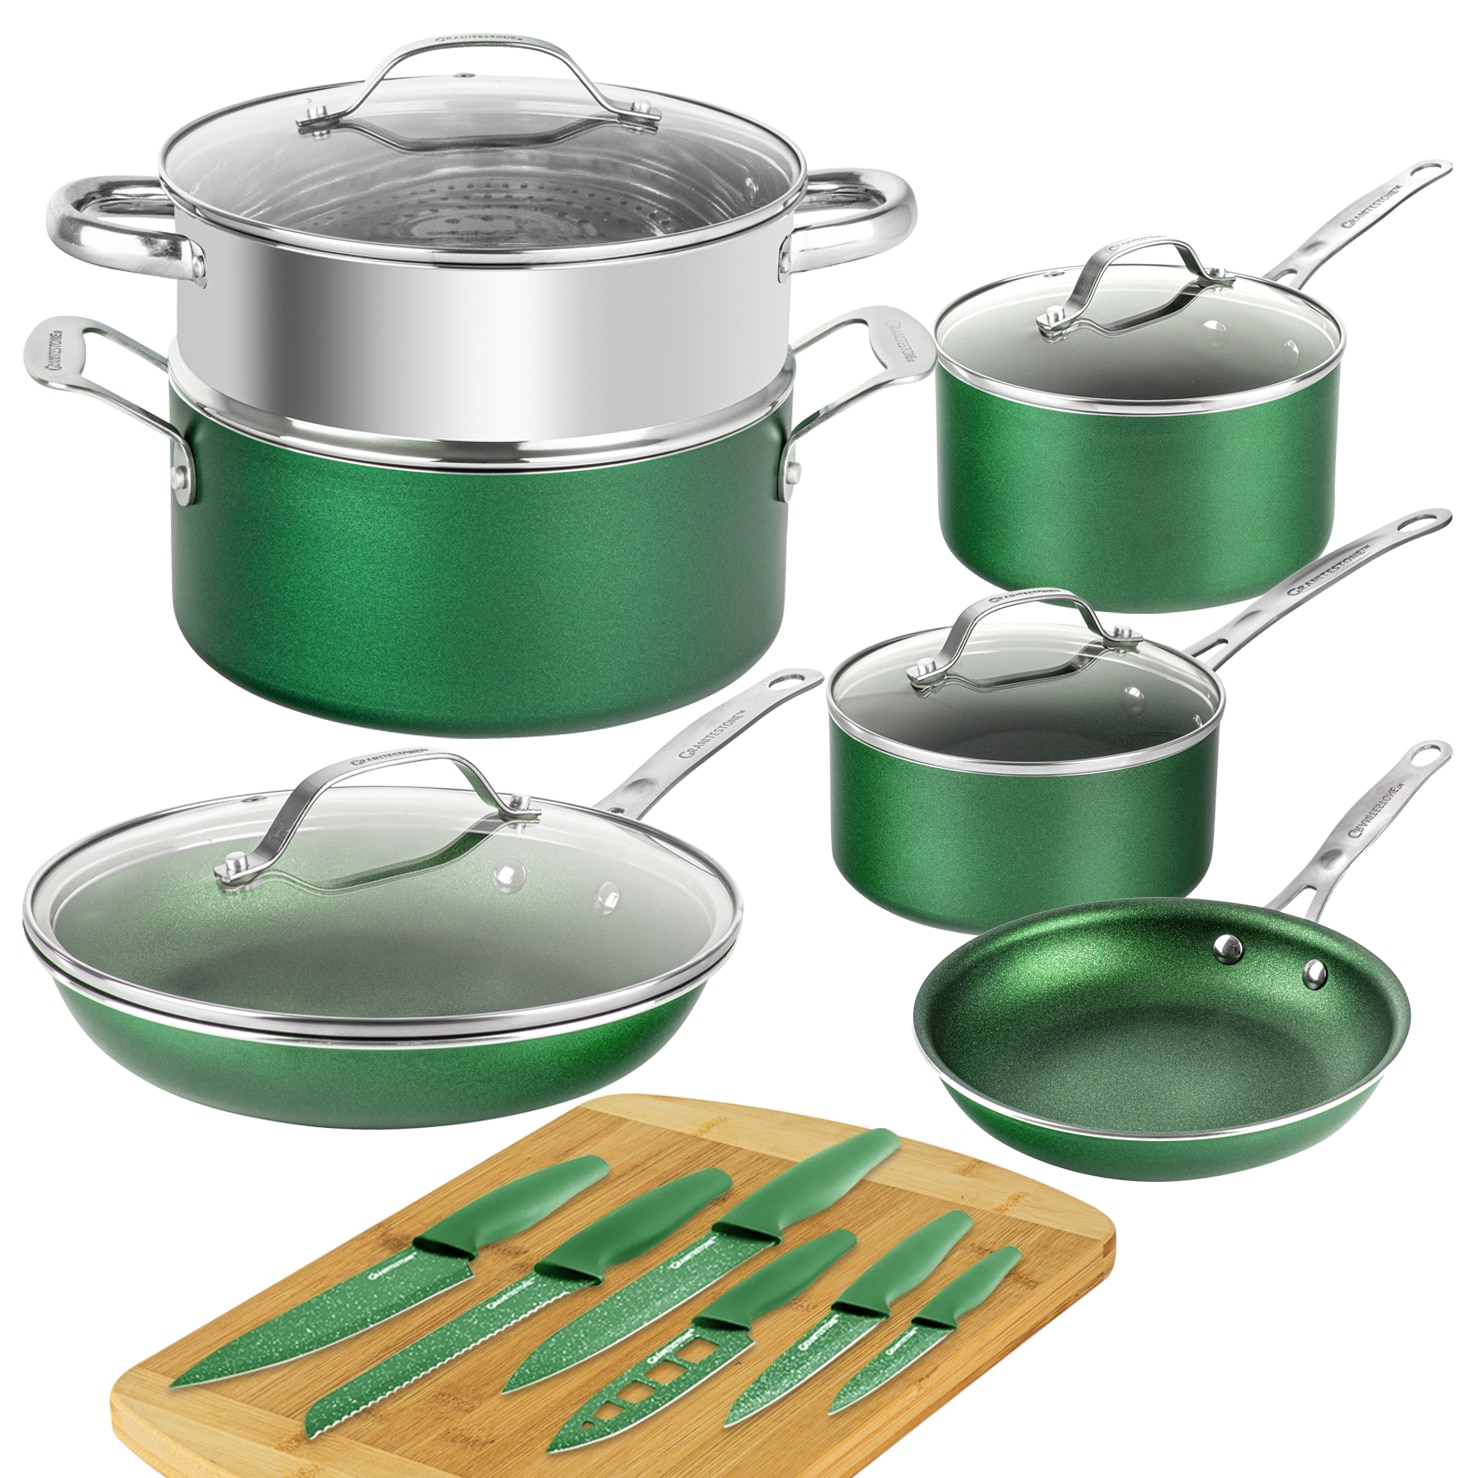 Granitestone Emerald 10-Piece Non-Stick Cookware Set